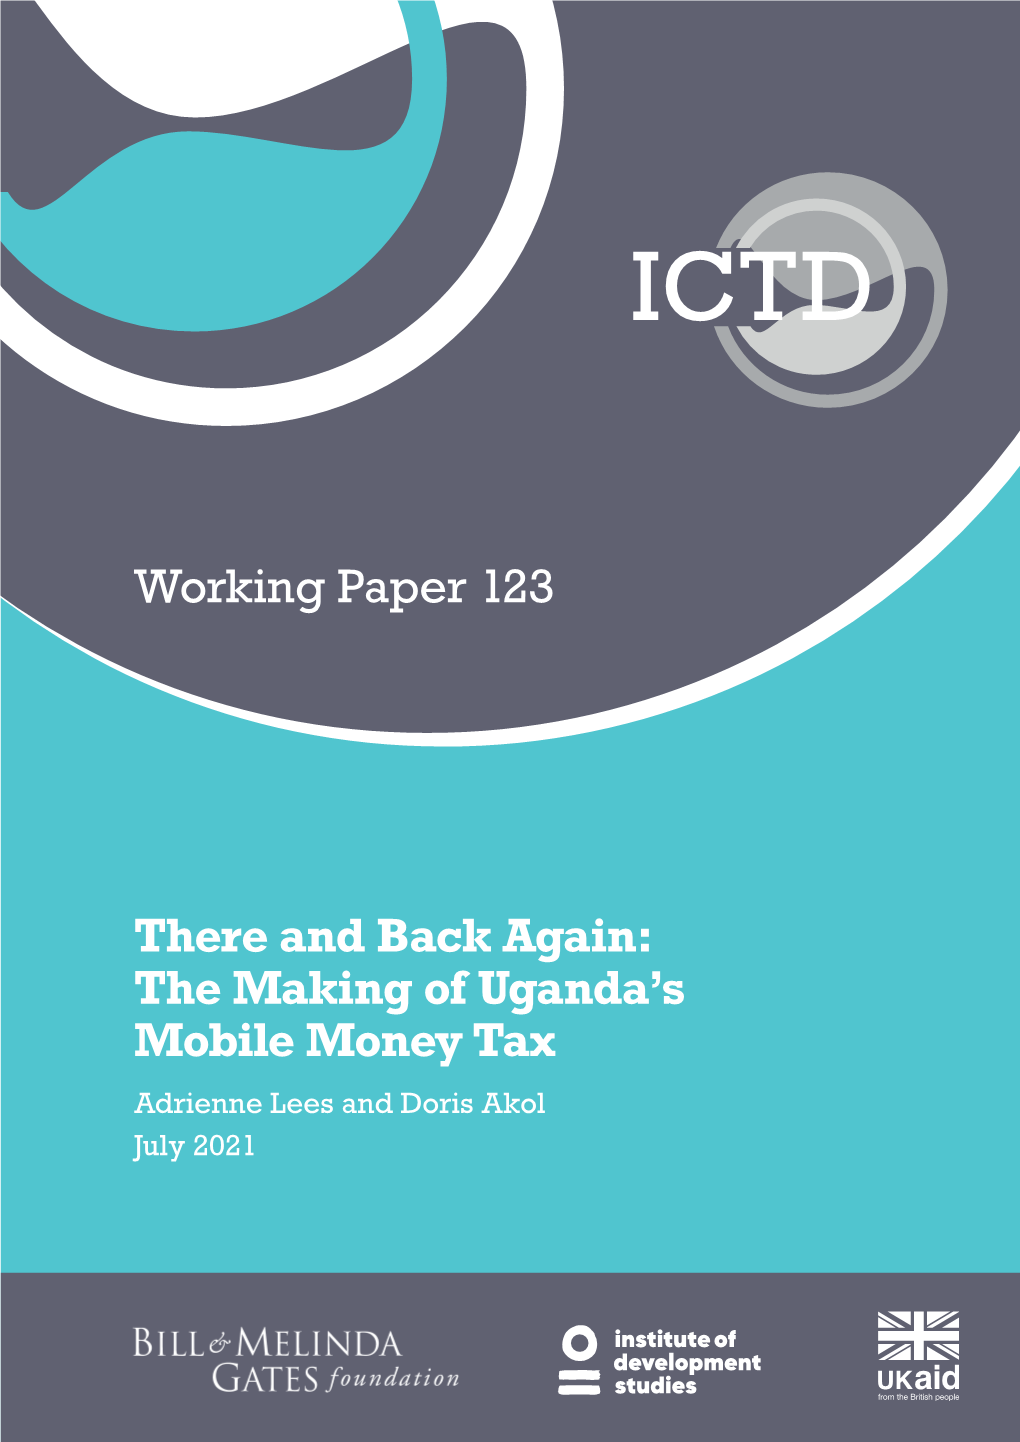 The Making of Uganda's Mobile Money